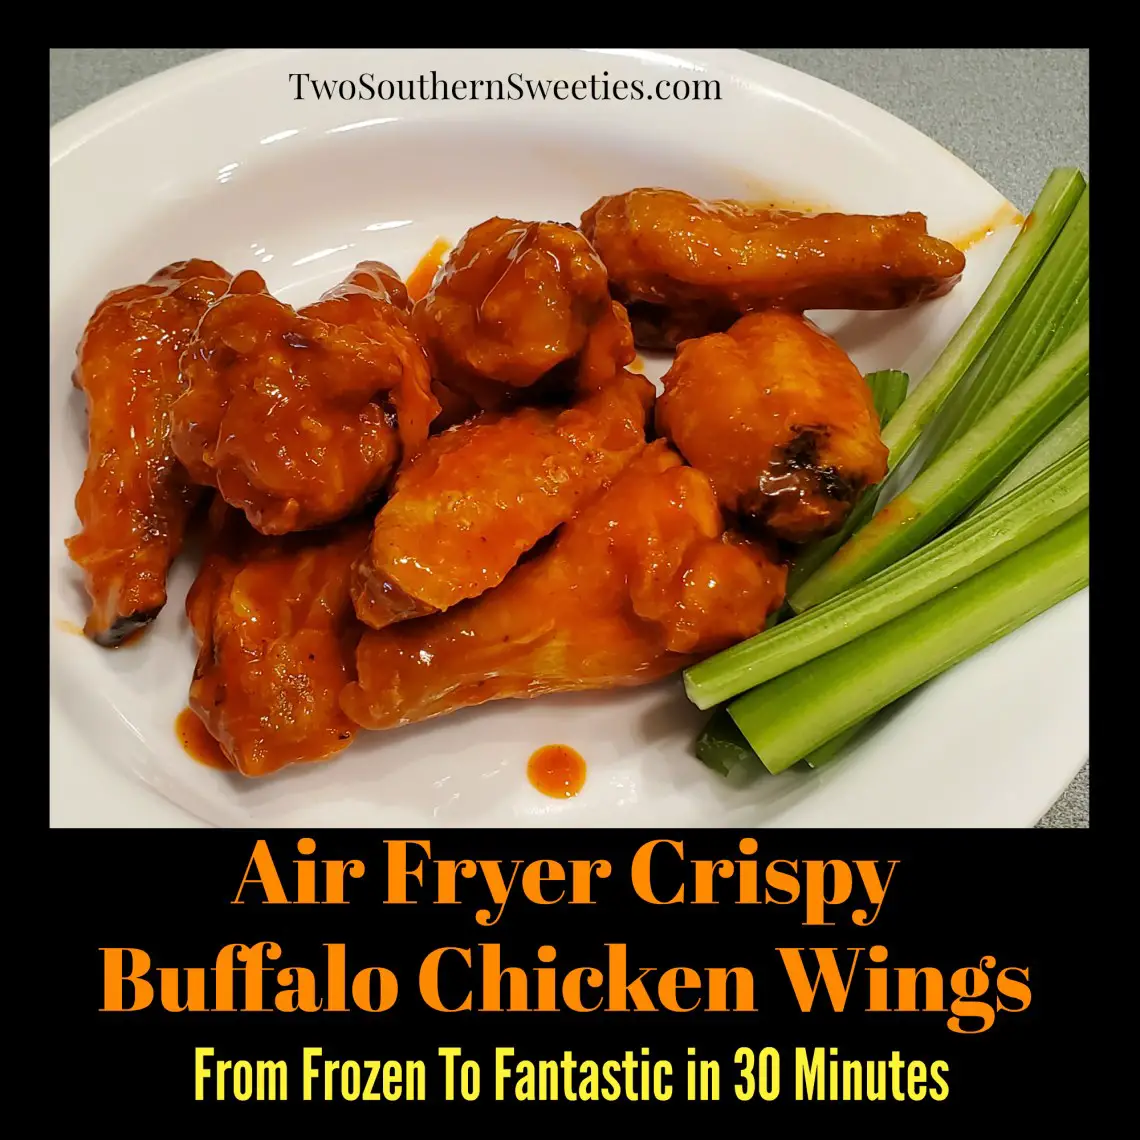 Air Fryer Crispy Buffalo Chicken Wings